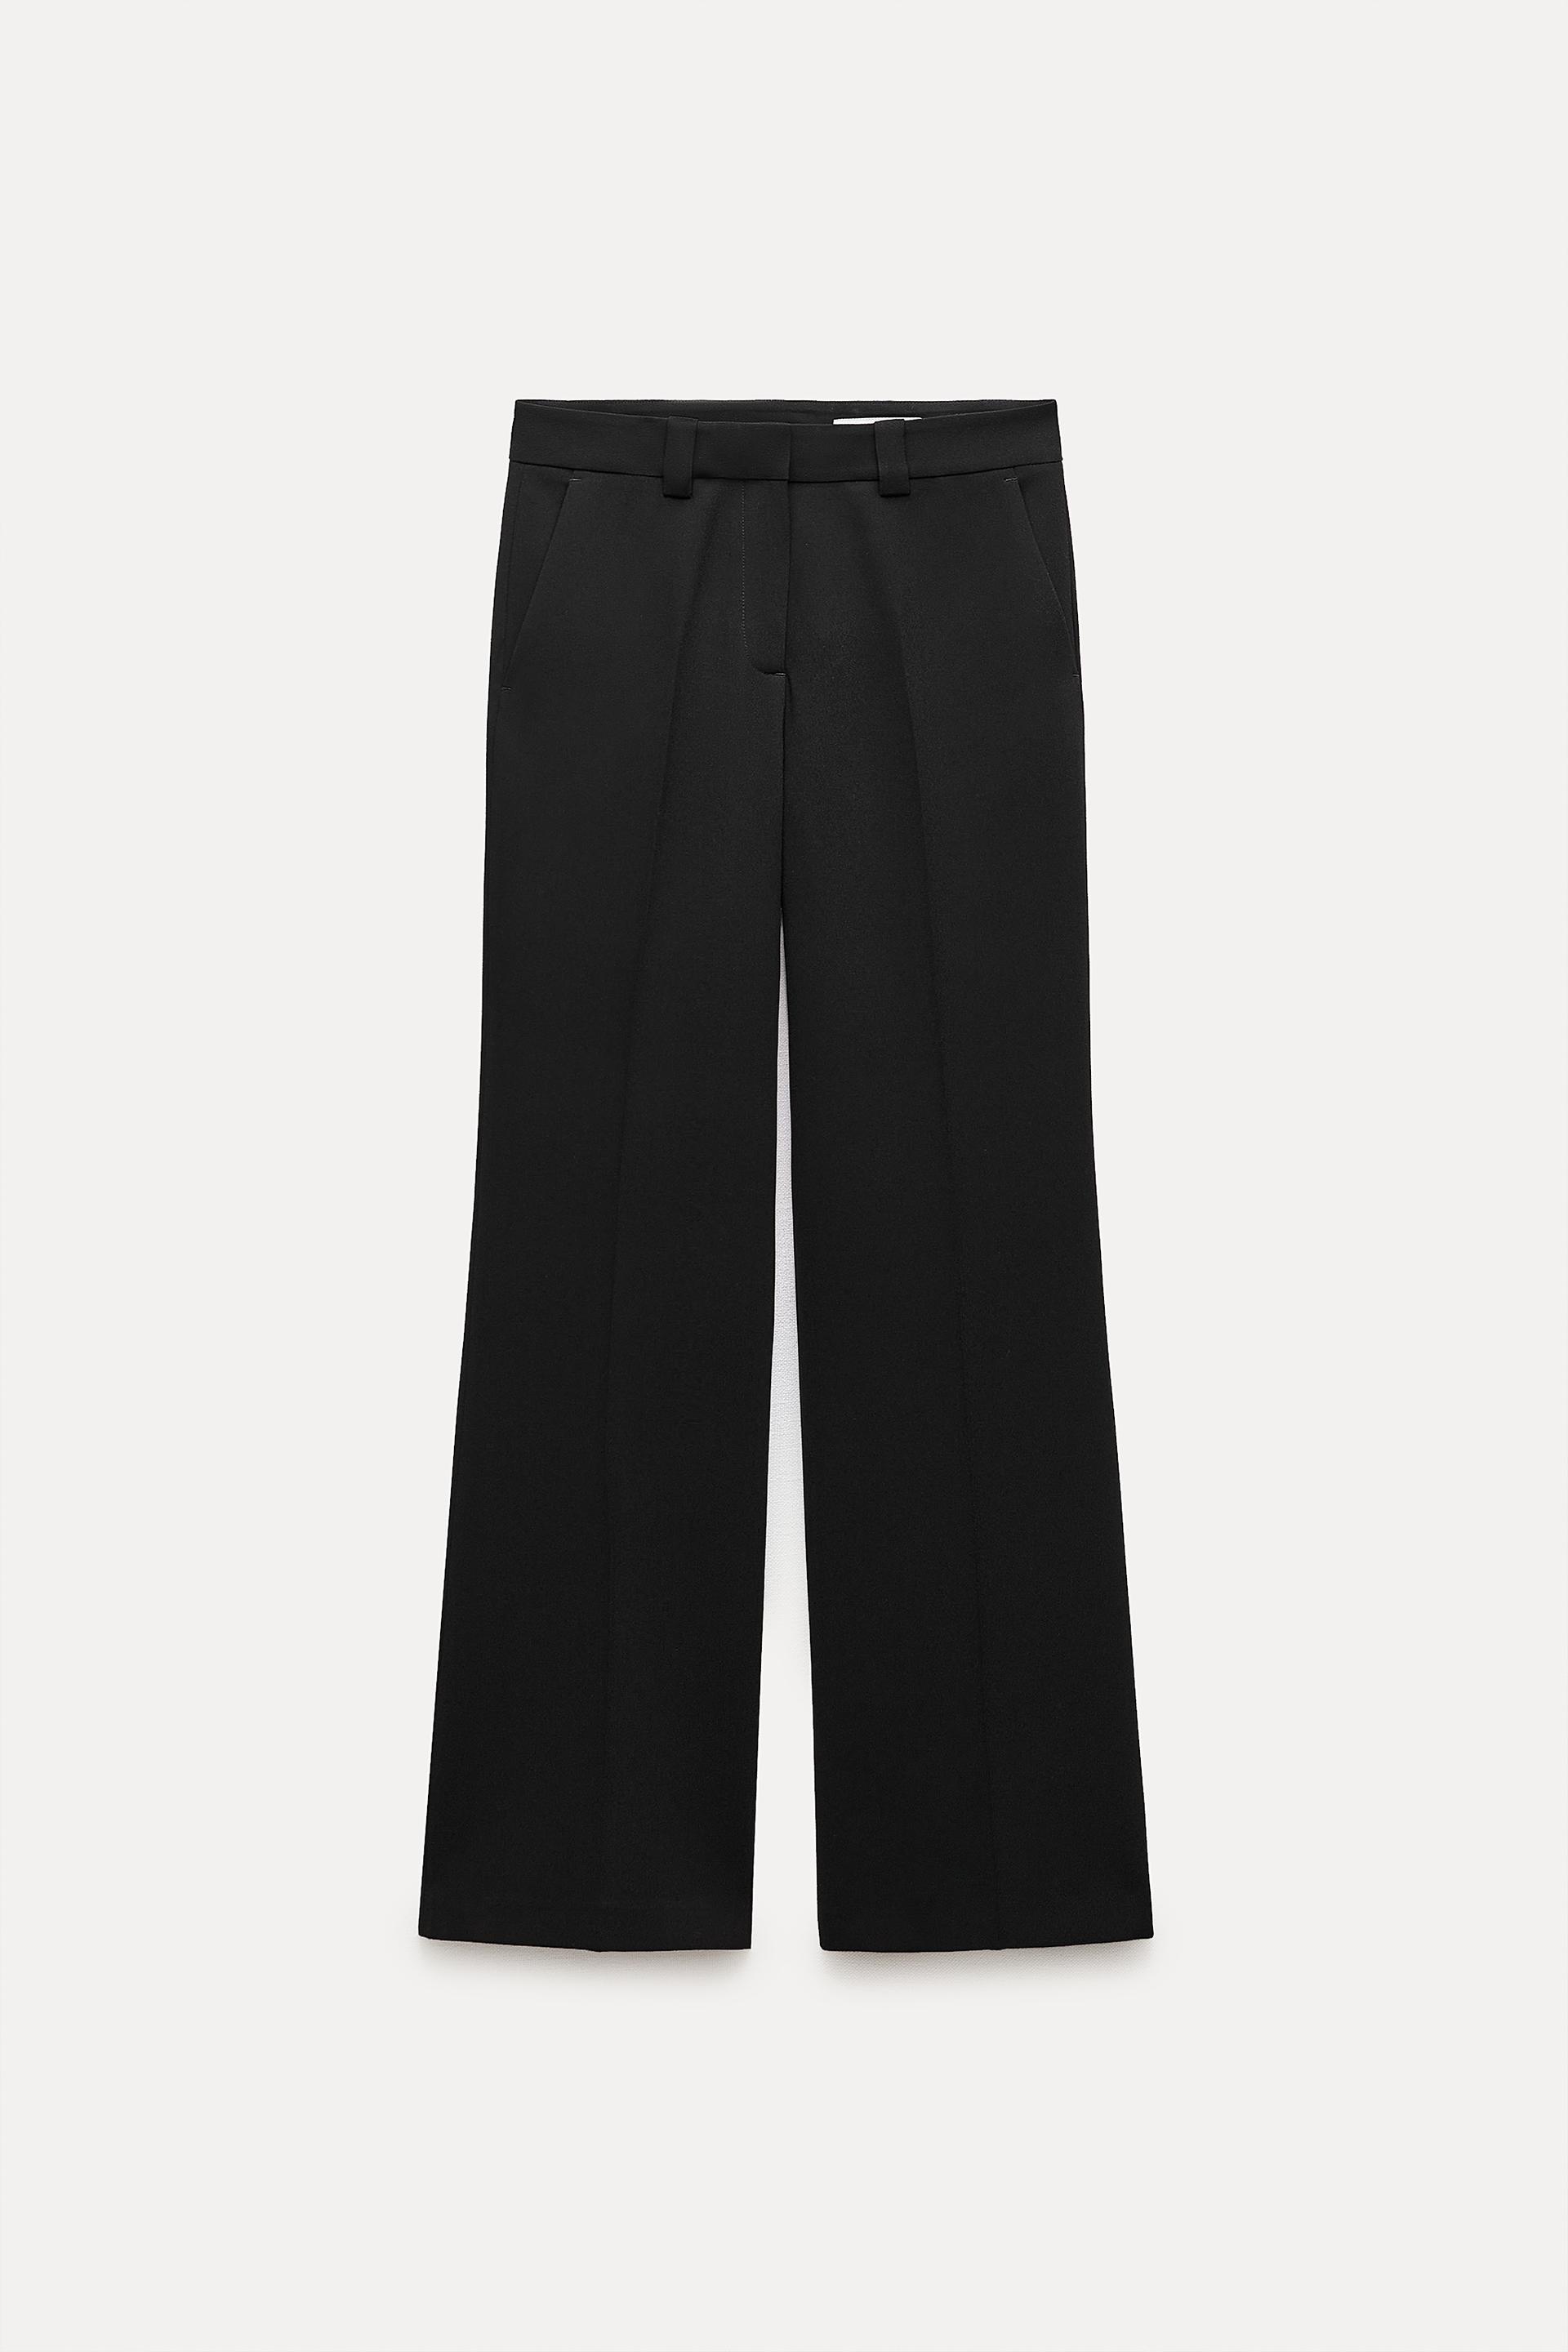 ZARA Black Formal Pants, Brand New